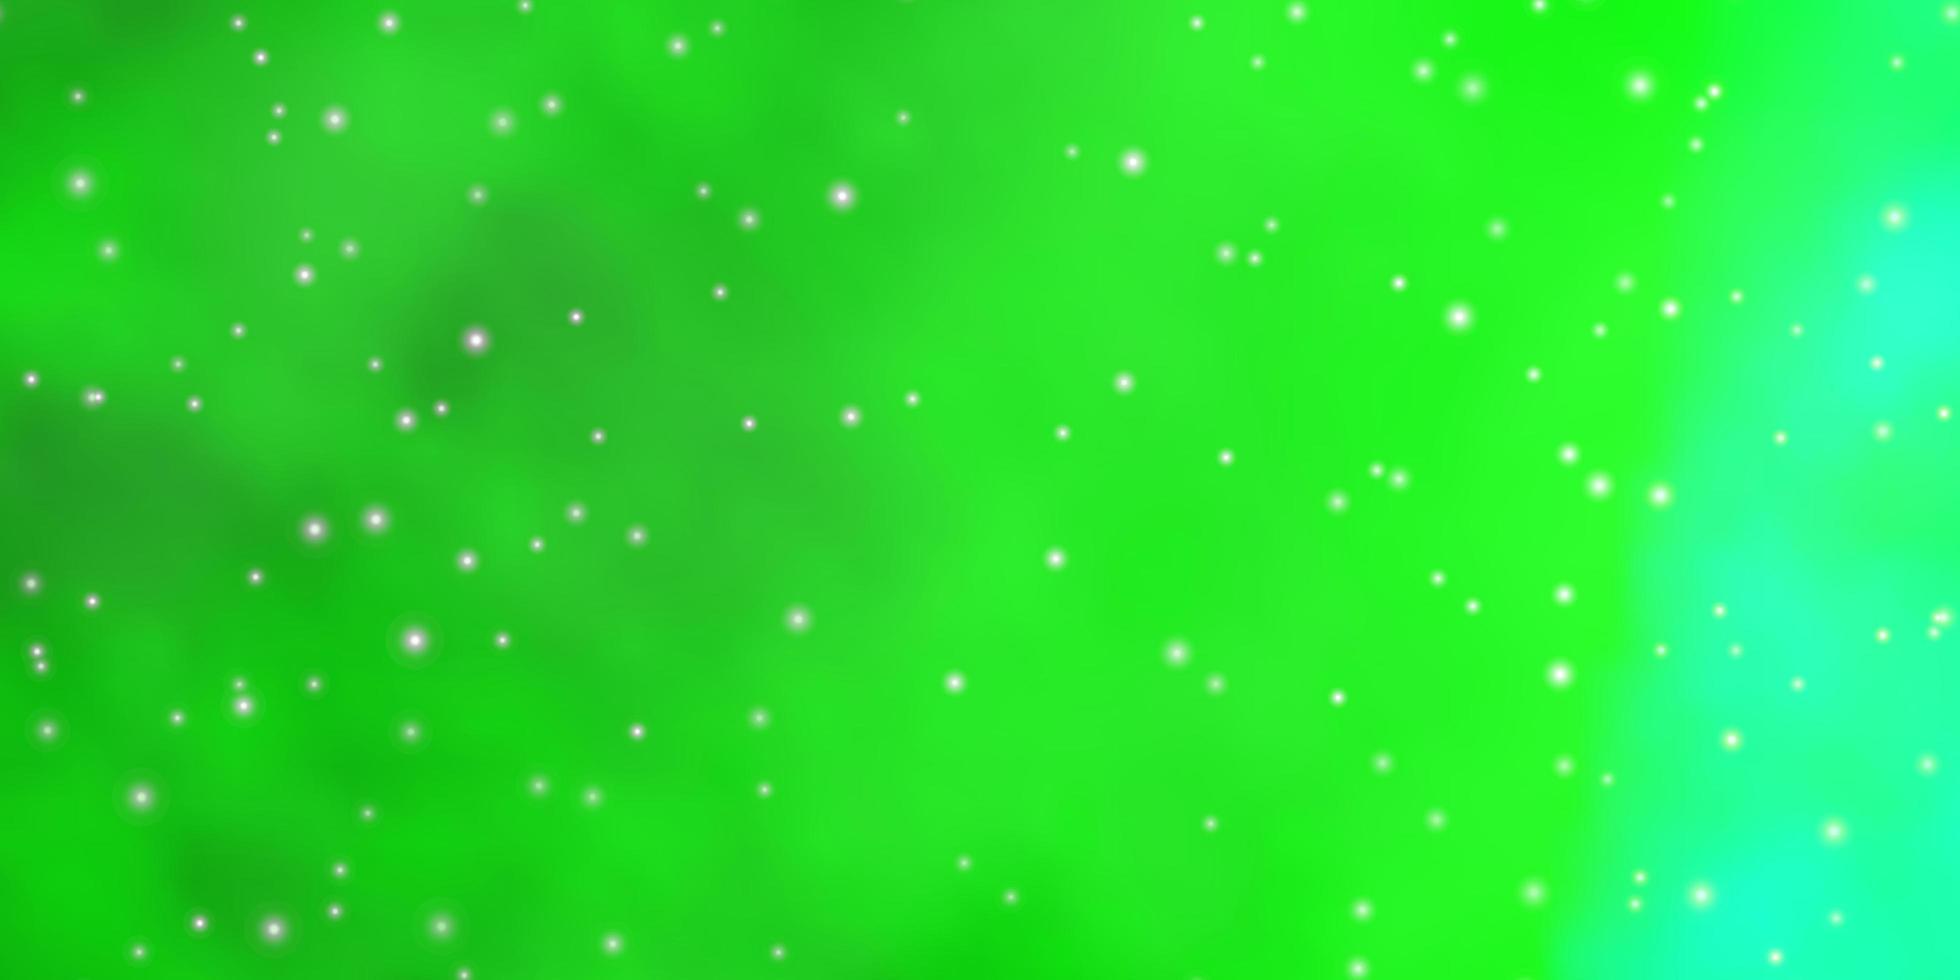 ljusgrönt vektormönster med abstrakta stjärnor. vektor